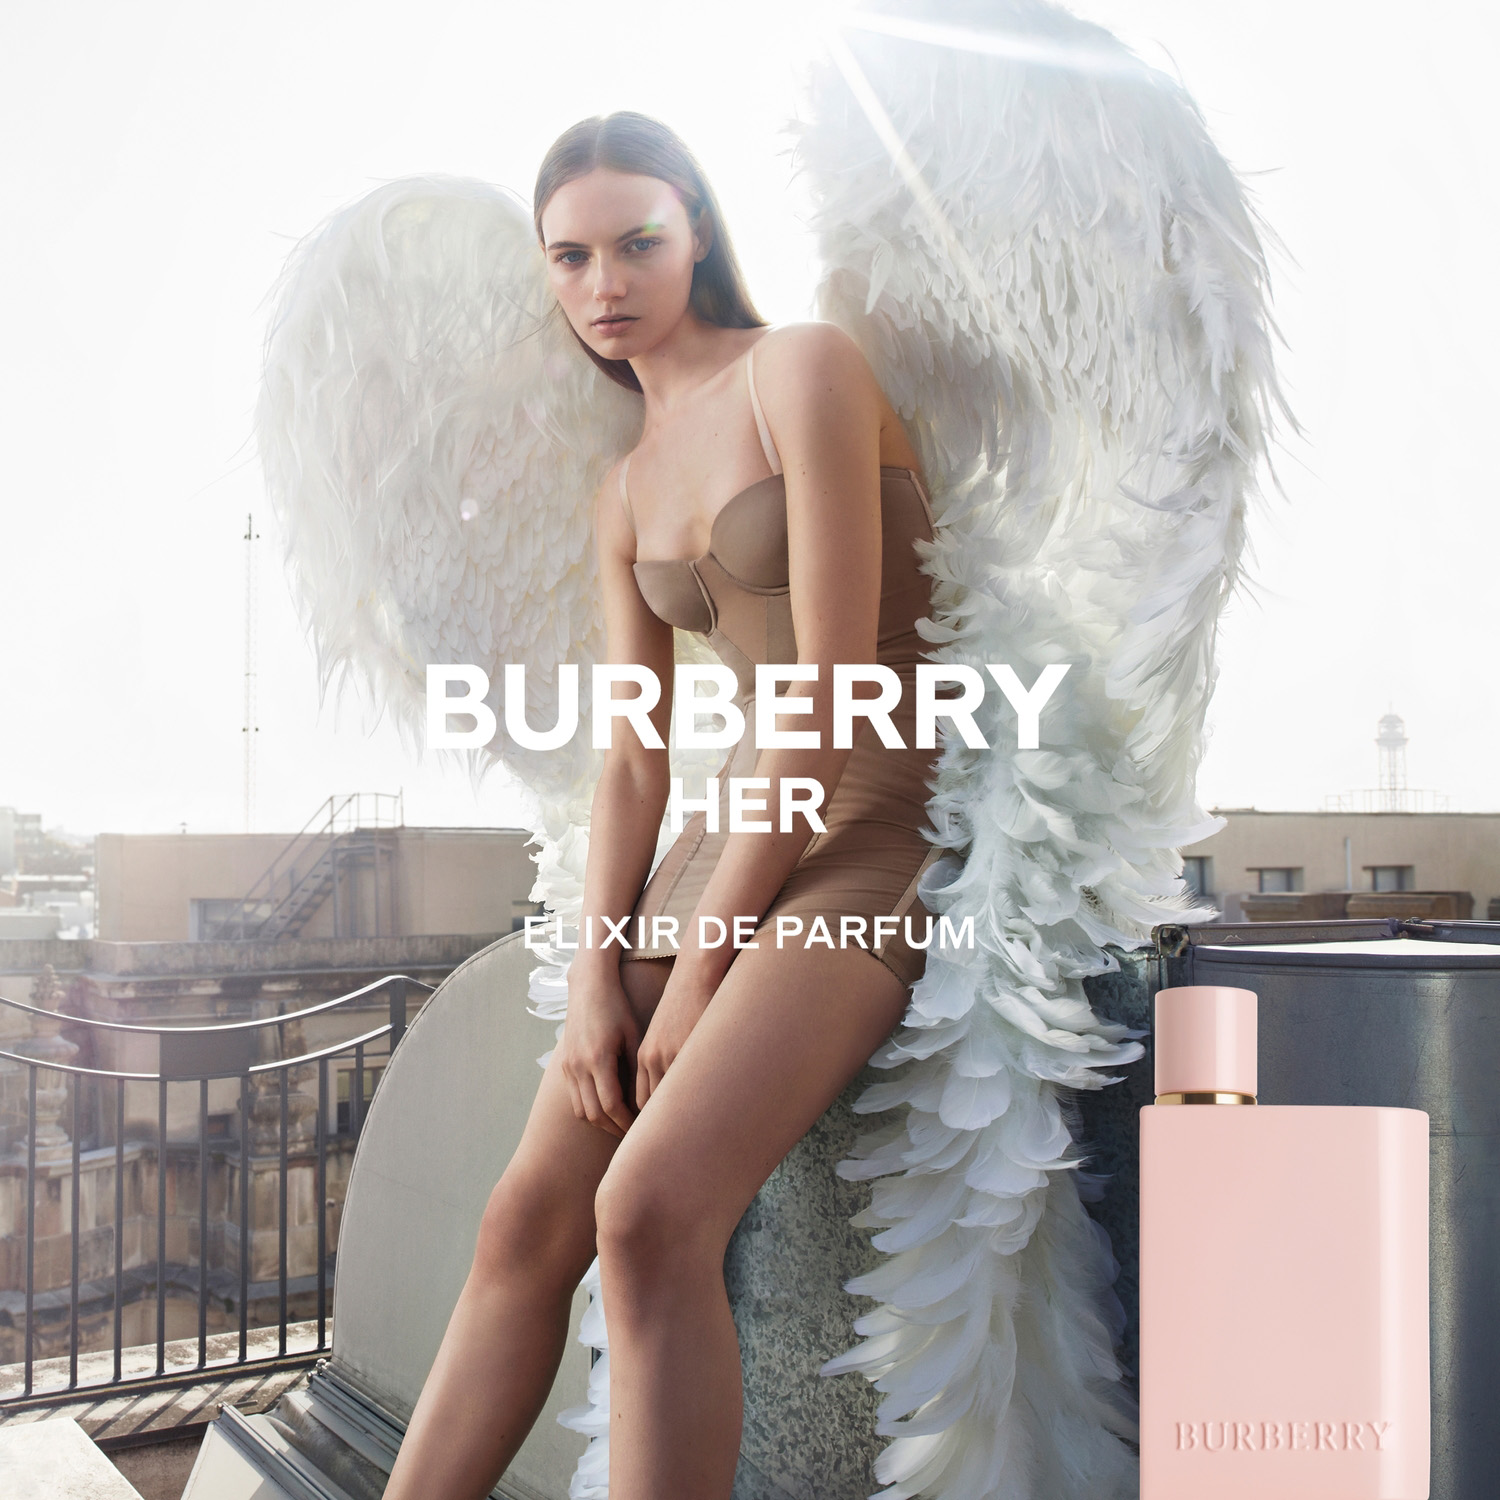 Burberry Her Elixir de Parfum Eau de Parfum Intense 30ml